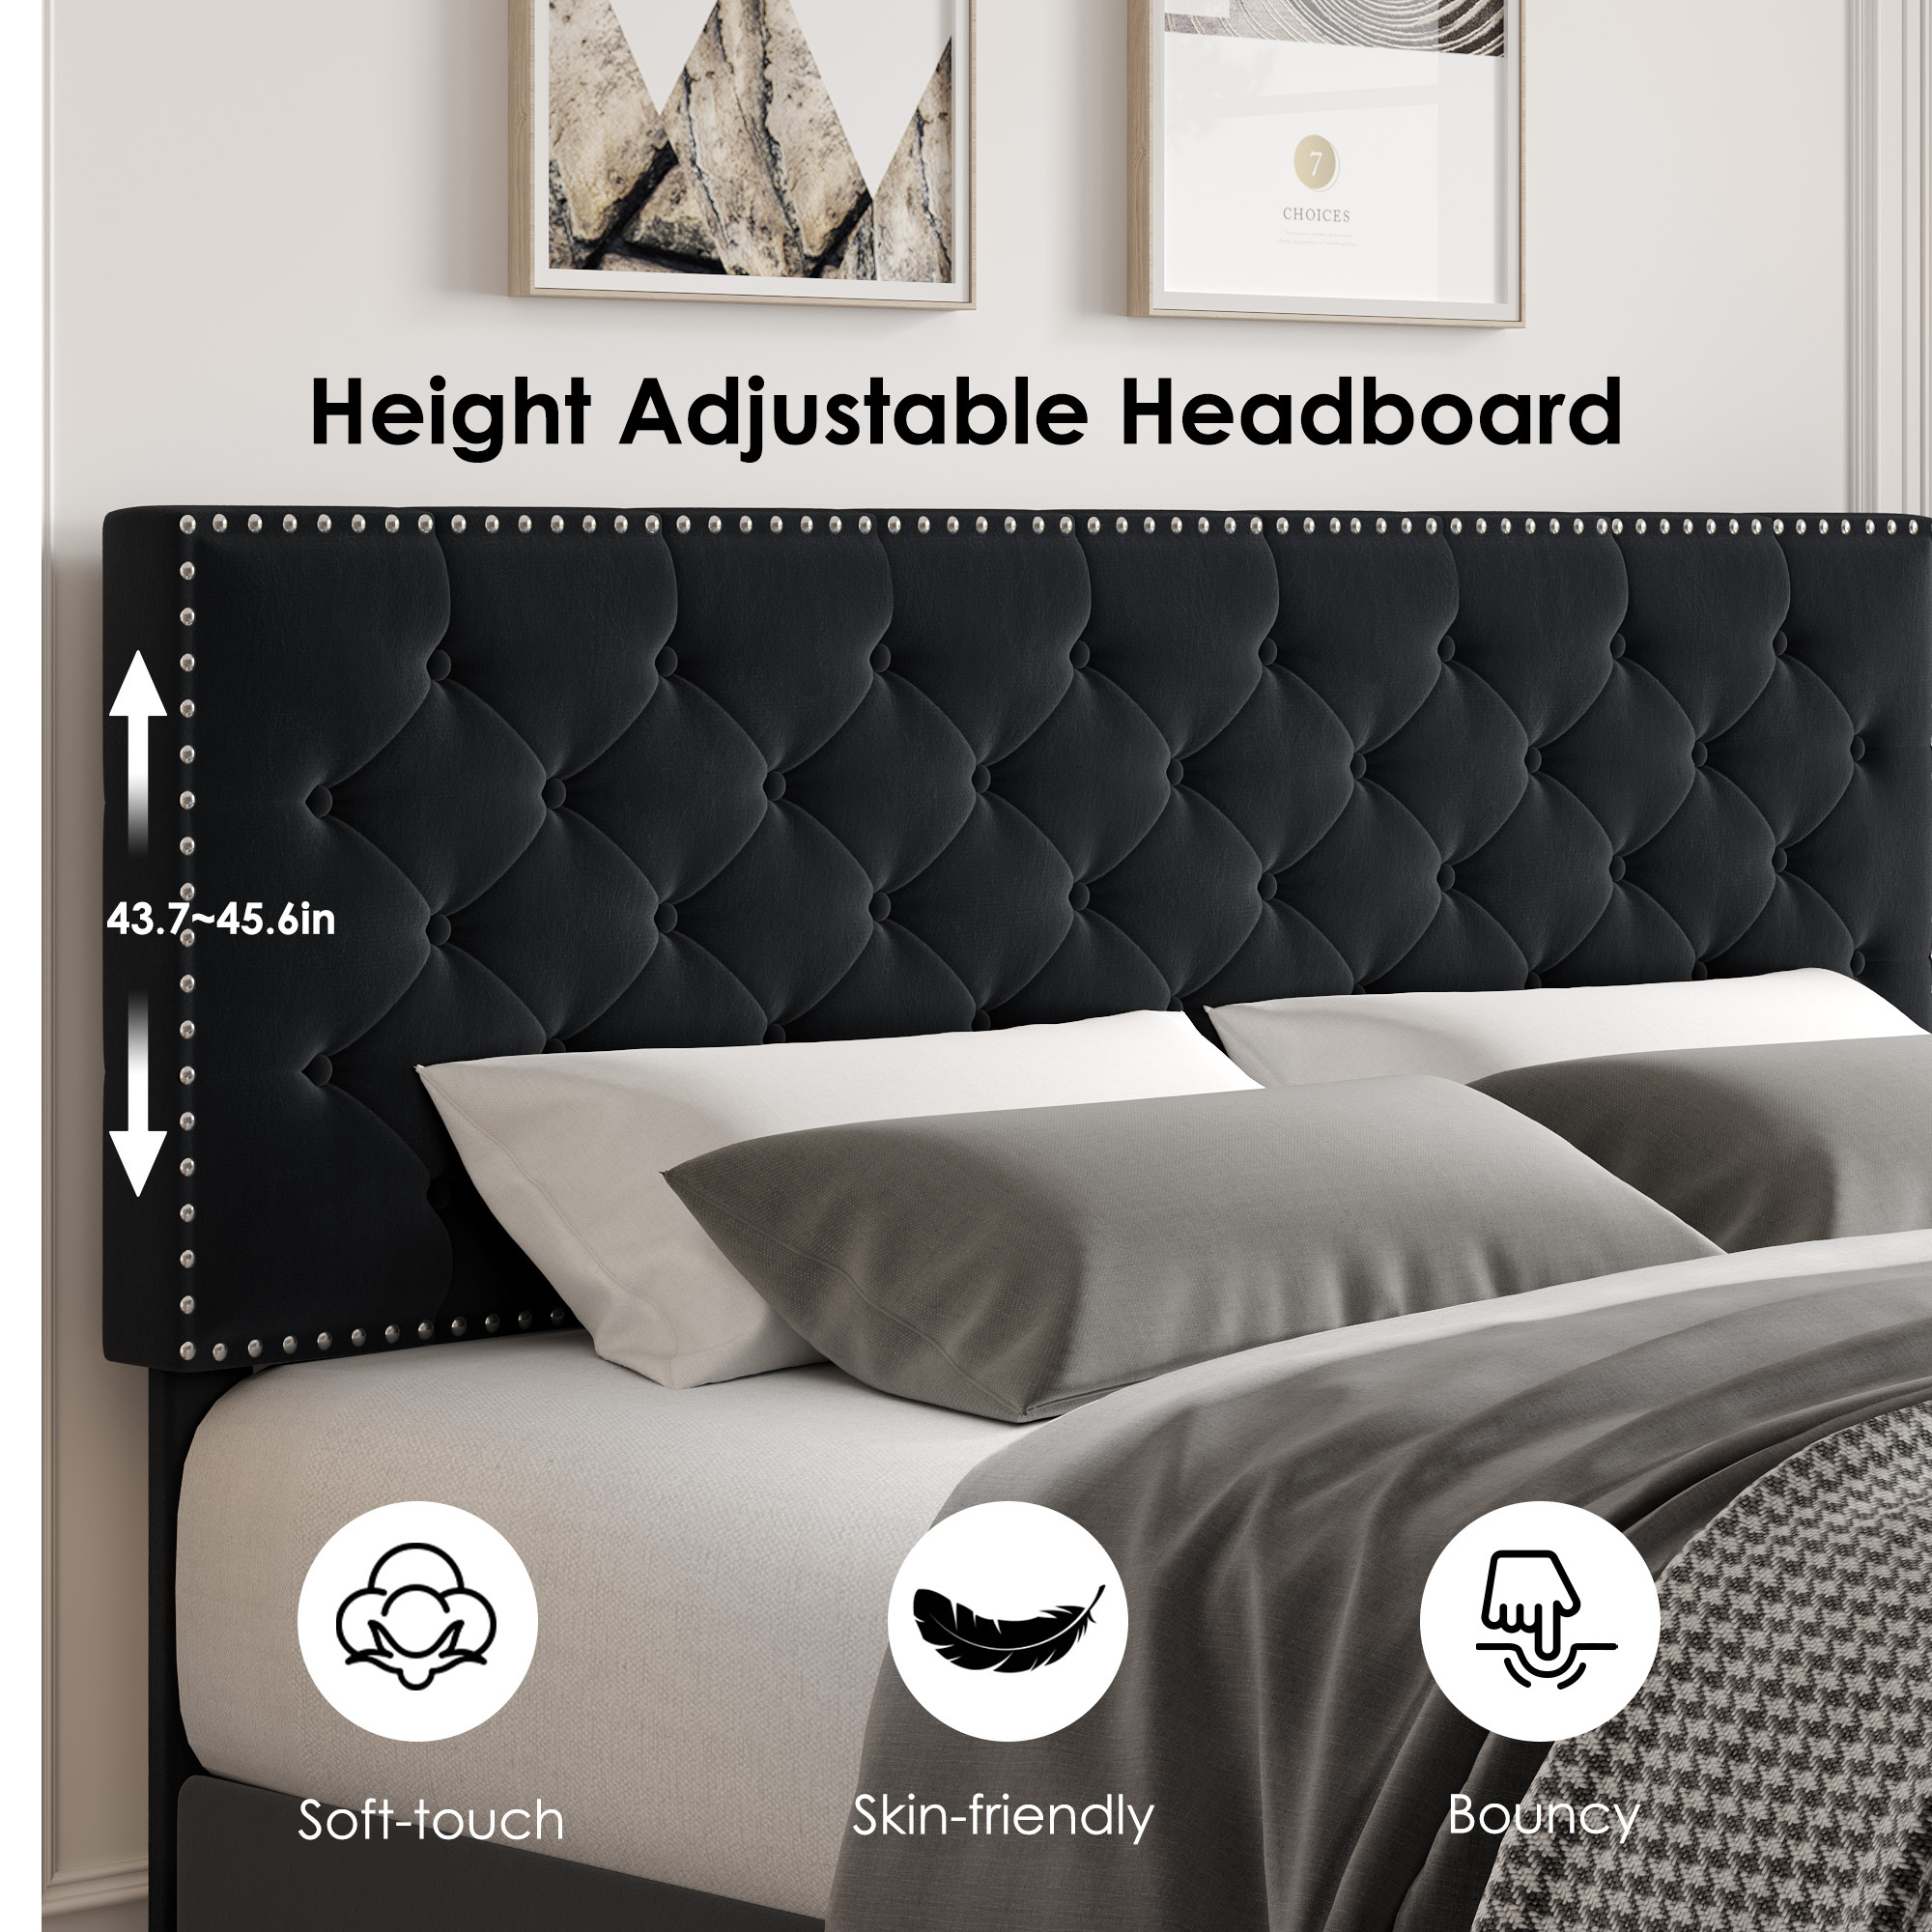 Homfa King Size Bed, Modern Upholstered Platform Bed Frame with Adjustable Headboard for Bedroom, Black - image 7 of 7